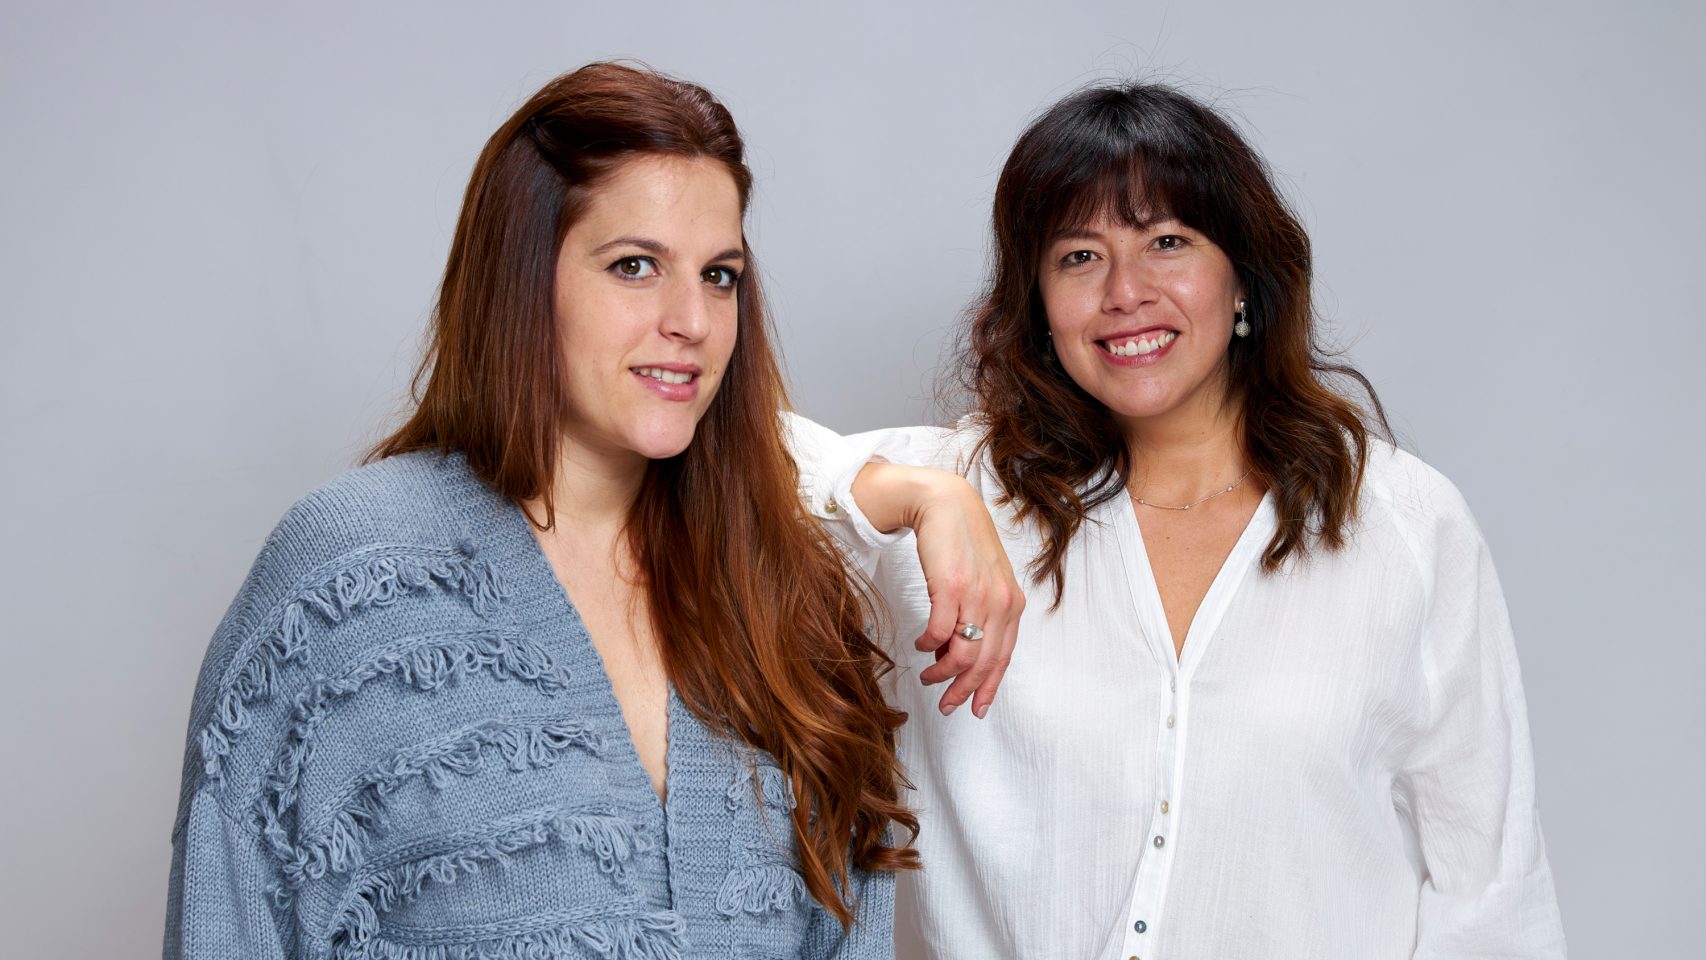 De derecha a izquierda, Judit Dopico y Julissa Llano (diseñadora)